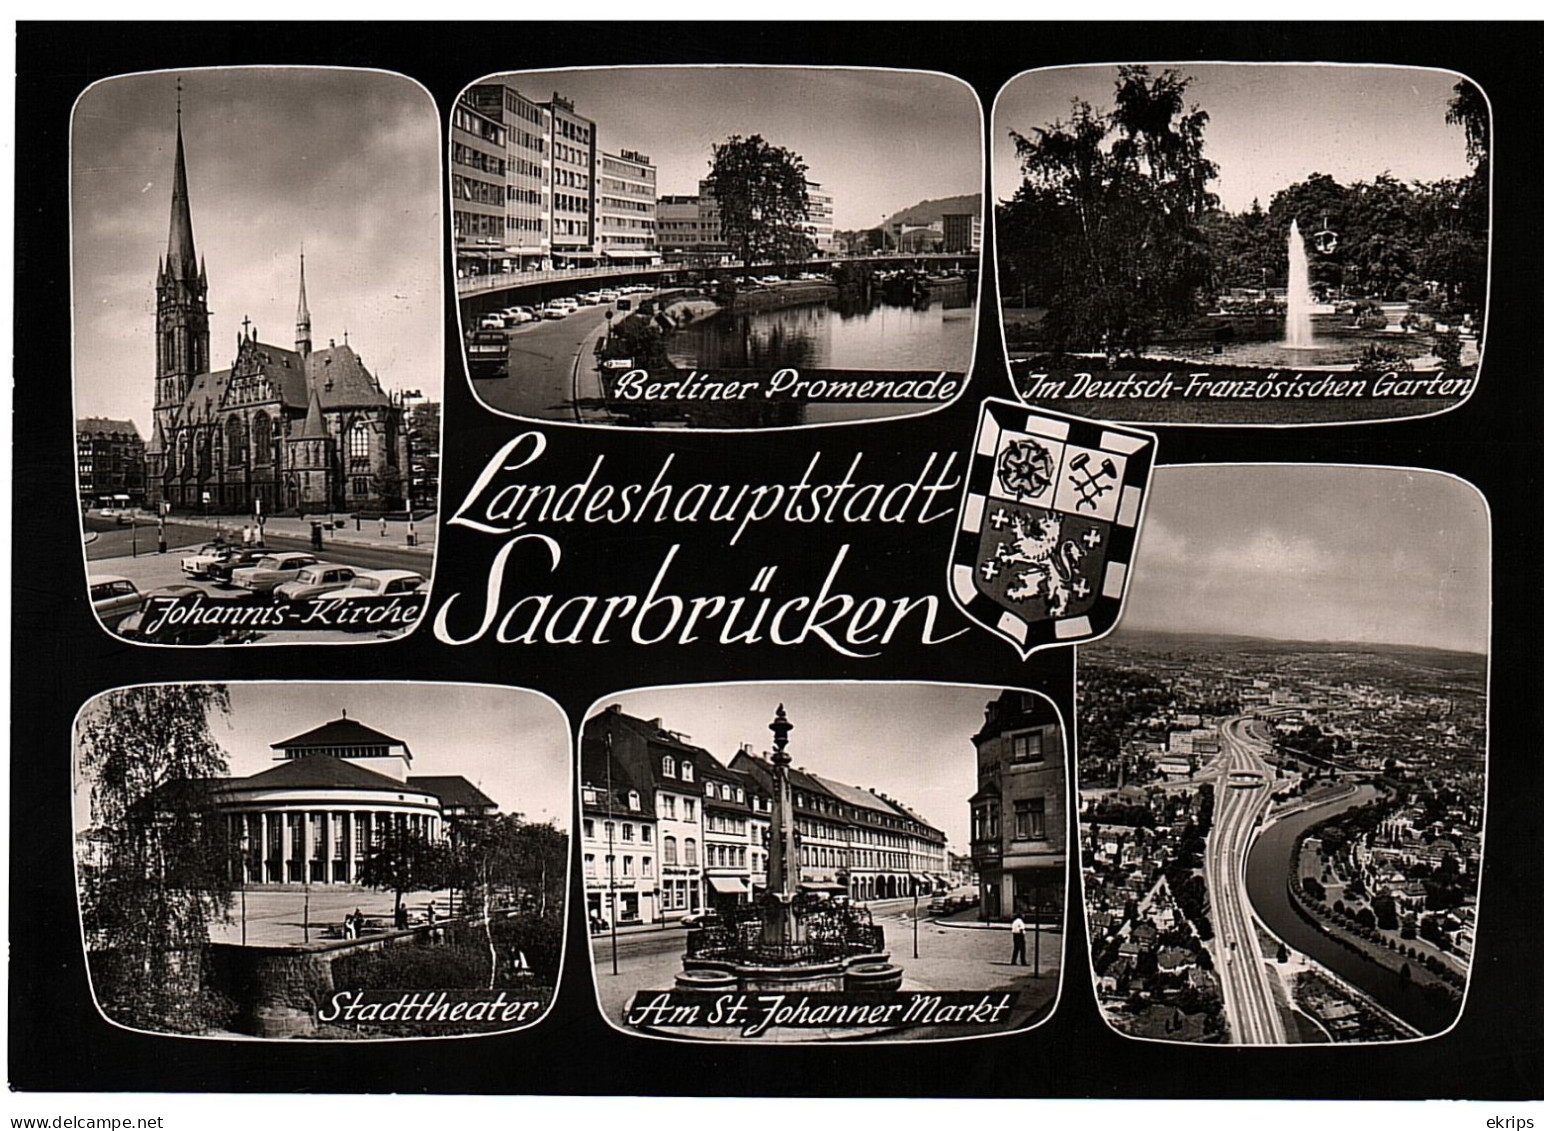 Landeshauptstadt Saarbrucken - Saarbrücken